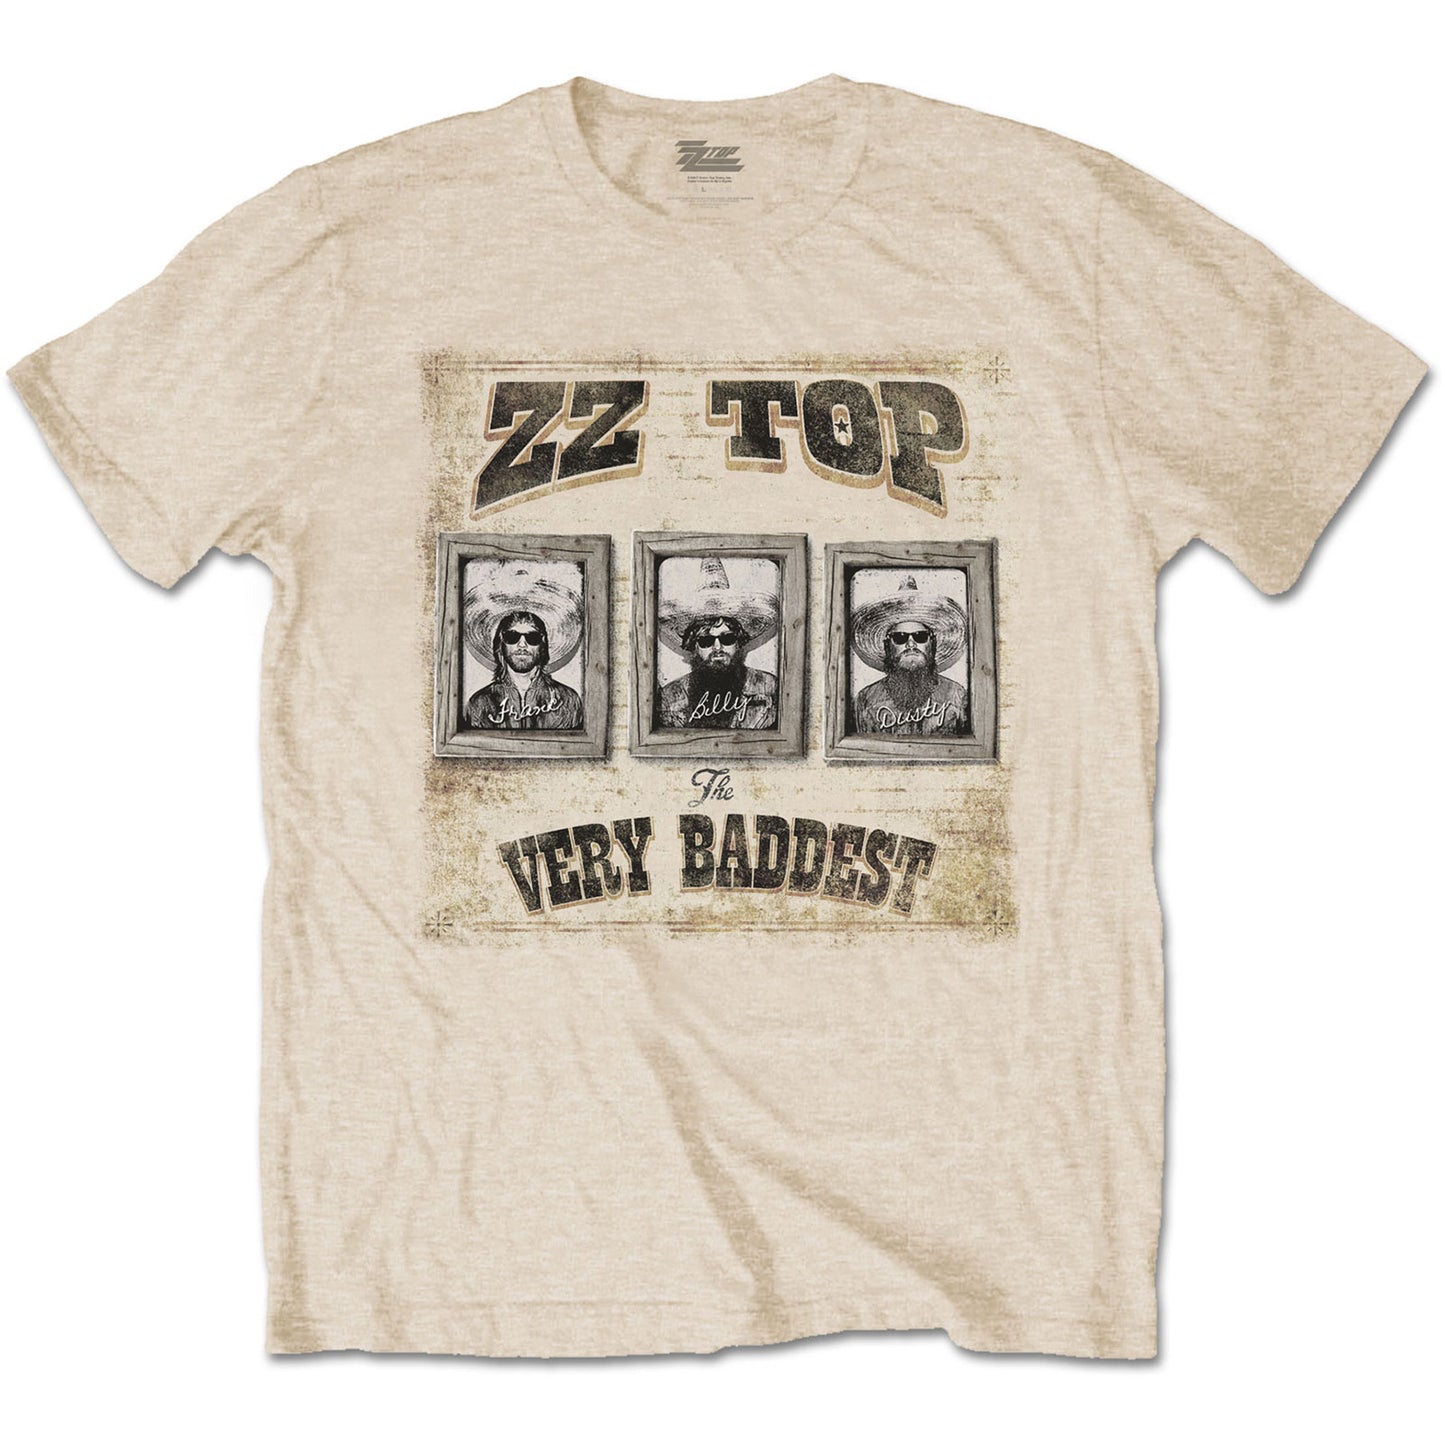 ZZ Top T-Shirt: Very Baddest